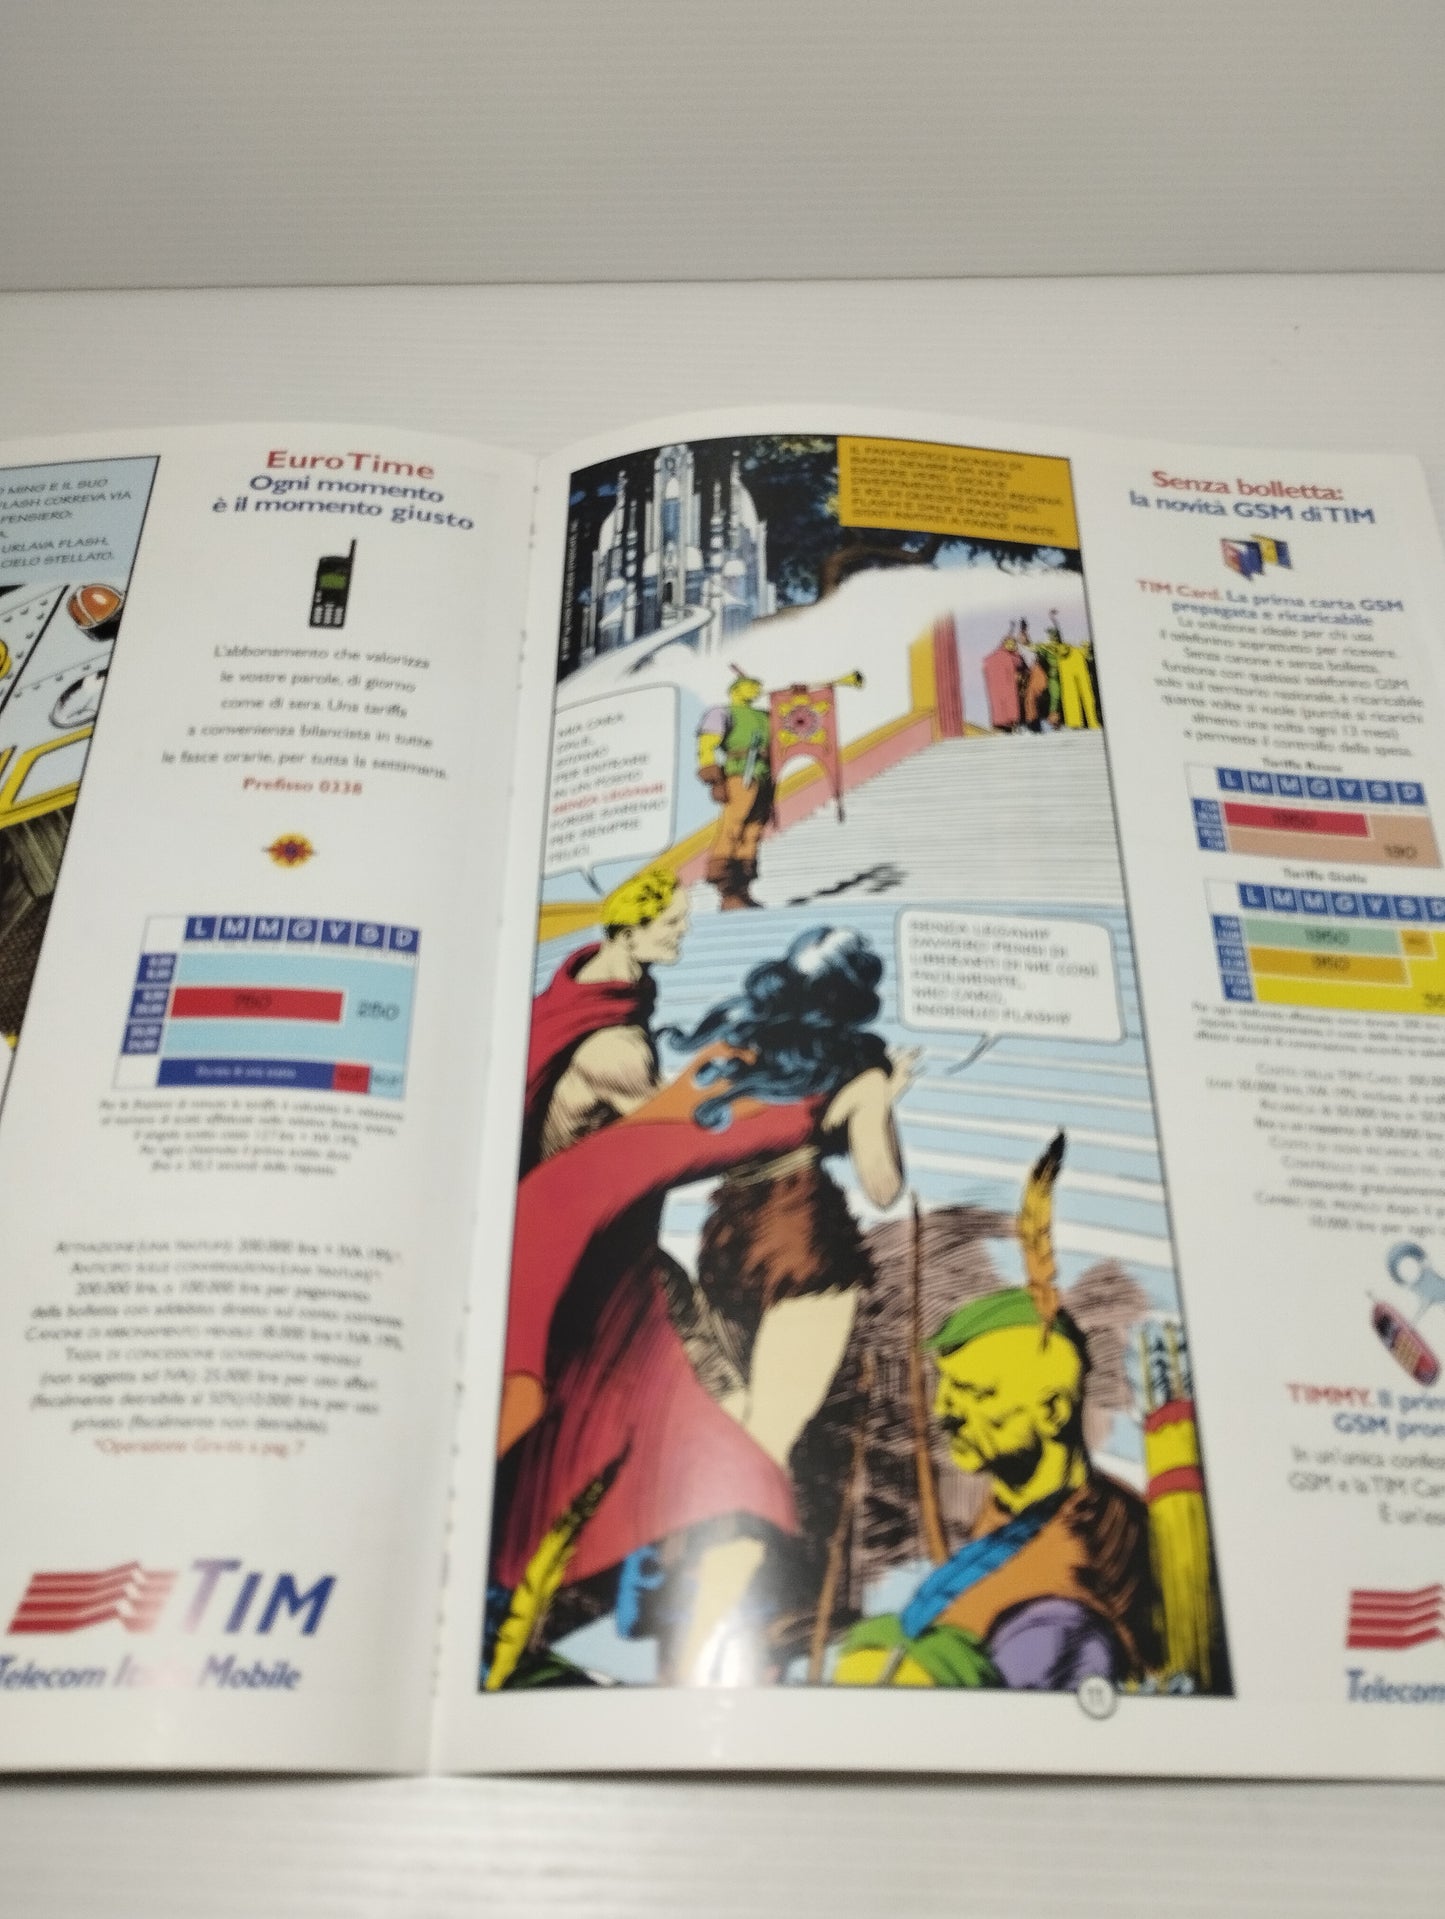 TIM fascicolo a Fumetti Flash Gordon
Edizione febbraio 1997